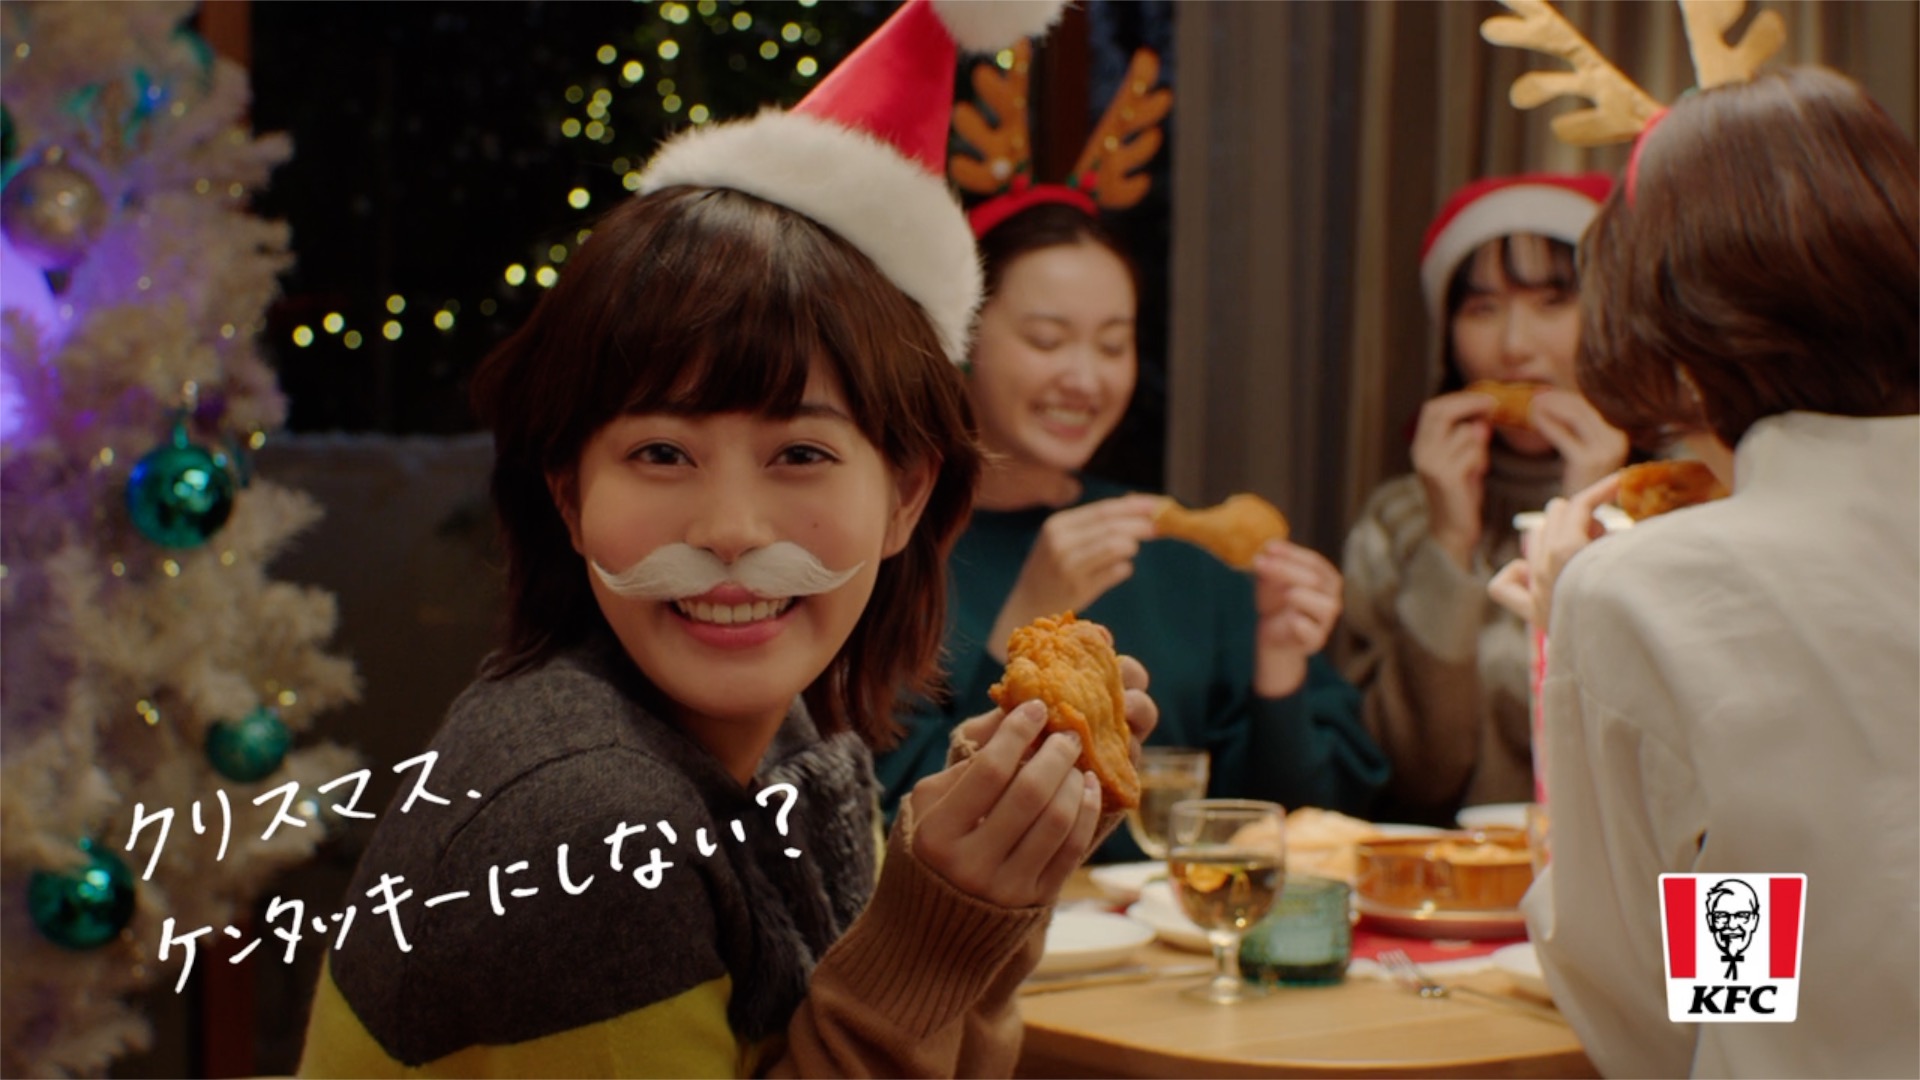 Oricon News オリコンニュース 在 Twitter 上 Cm公開 高畑充希 サンタのコスプレでクリスマスパーティに参加 Cmソングは今年も竹内まりや すてきなホリデイ T Co Uwlm1shnas 高畑充希 ケンタッキー Kfc フライドチキン Cm T Co